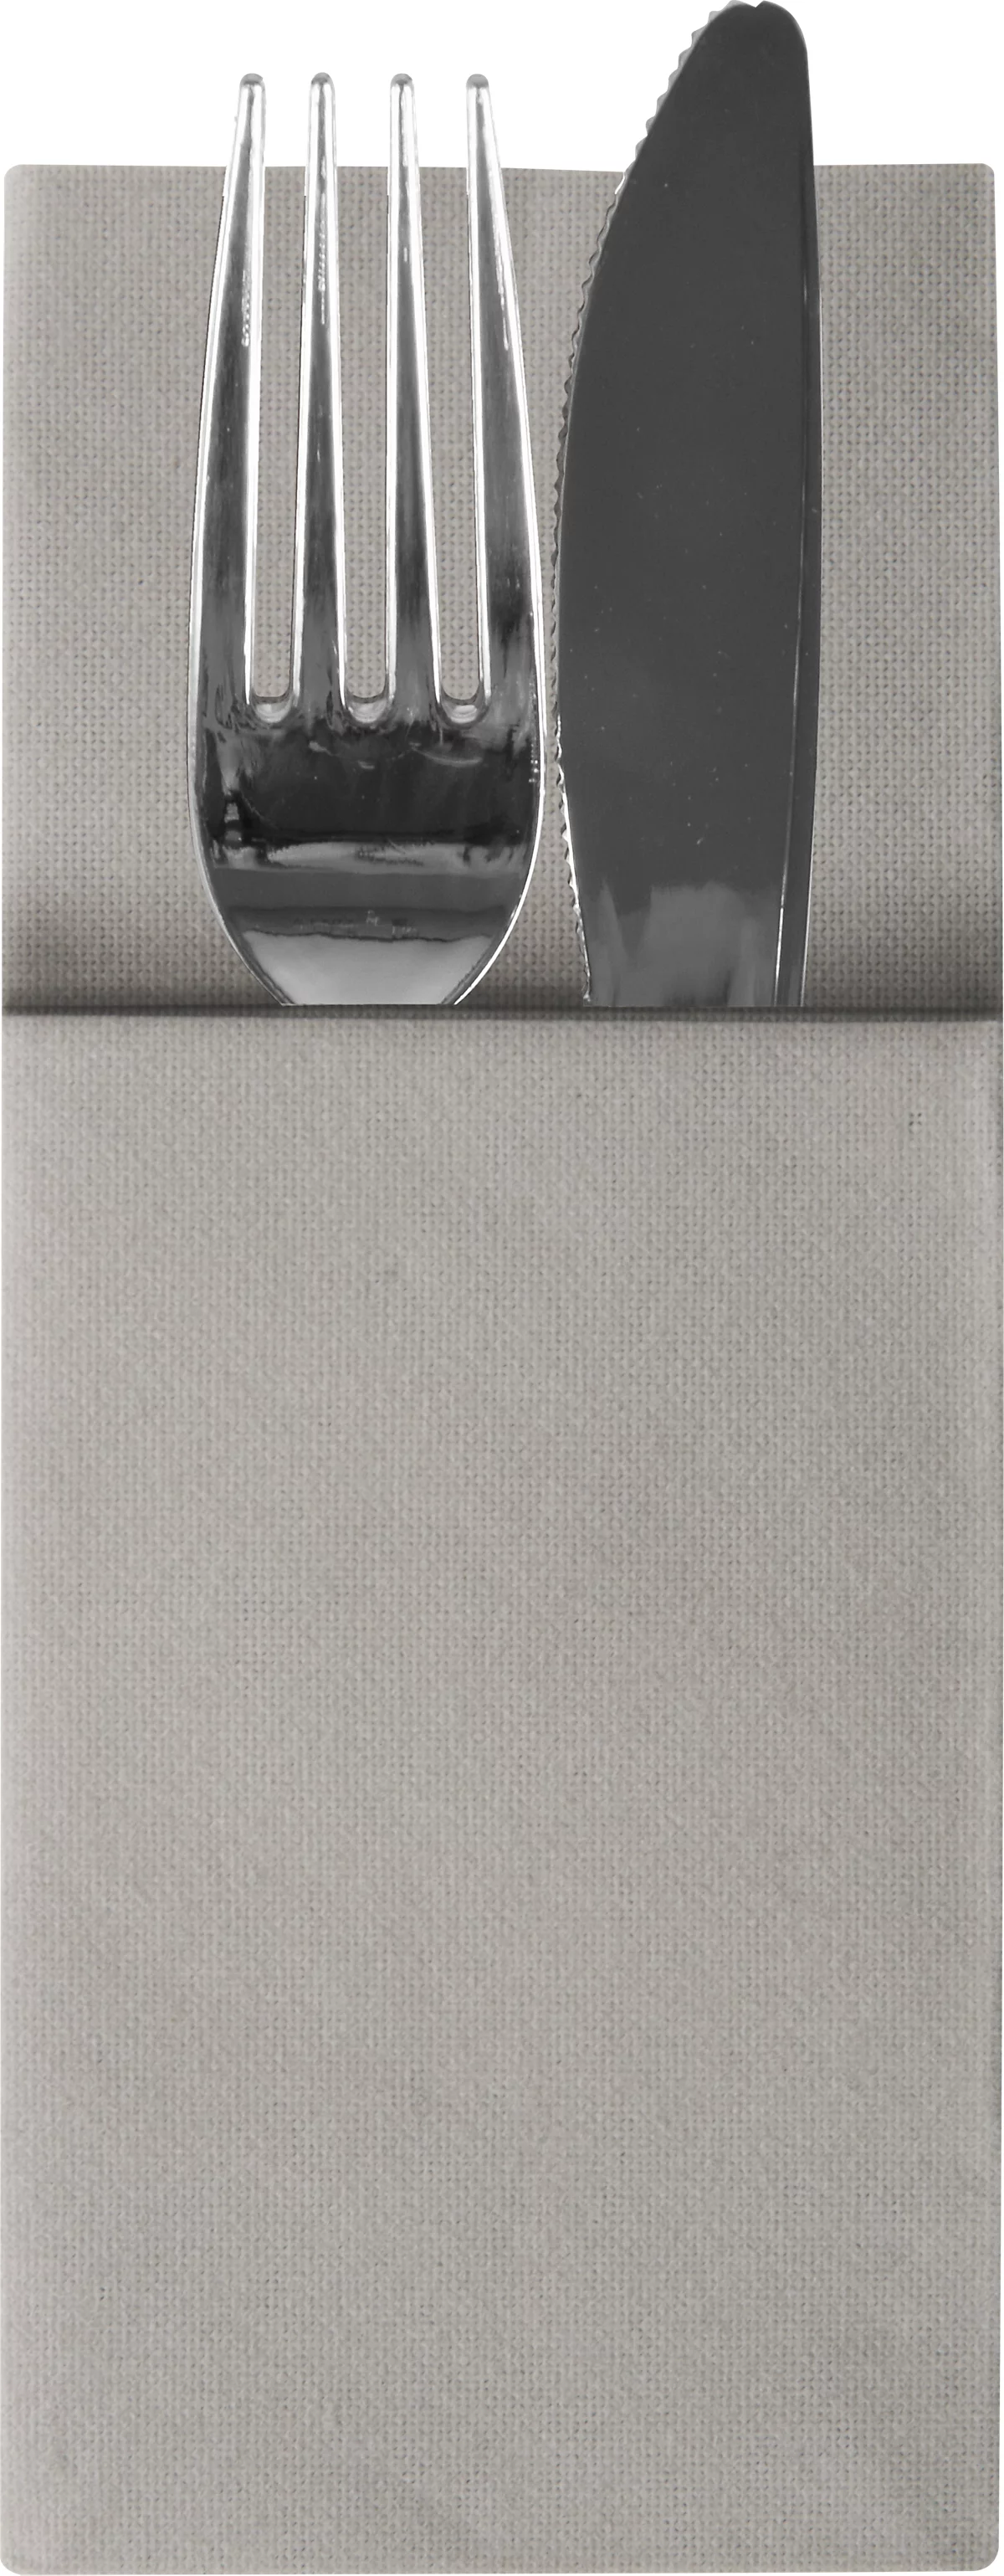 Bestecktaschen Papstar 'Airlaid', 4 x 100 Stk., B 100 x H 240 mm, 1/8 Falz, Airlaid, grau